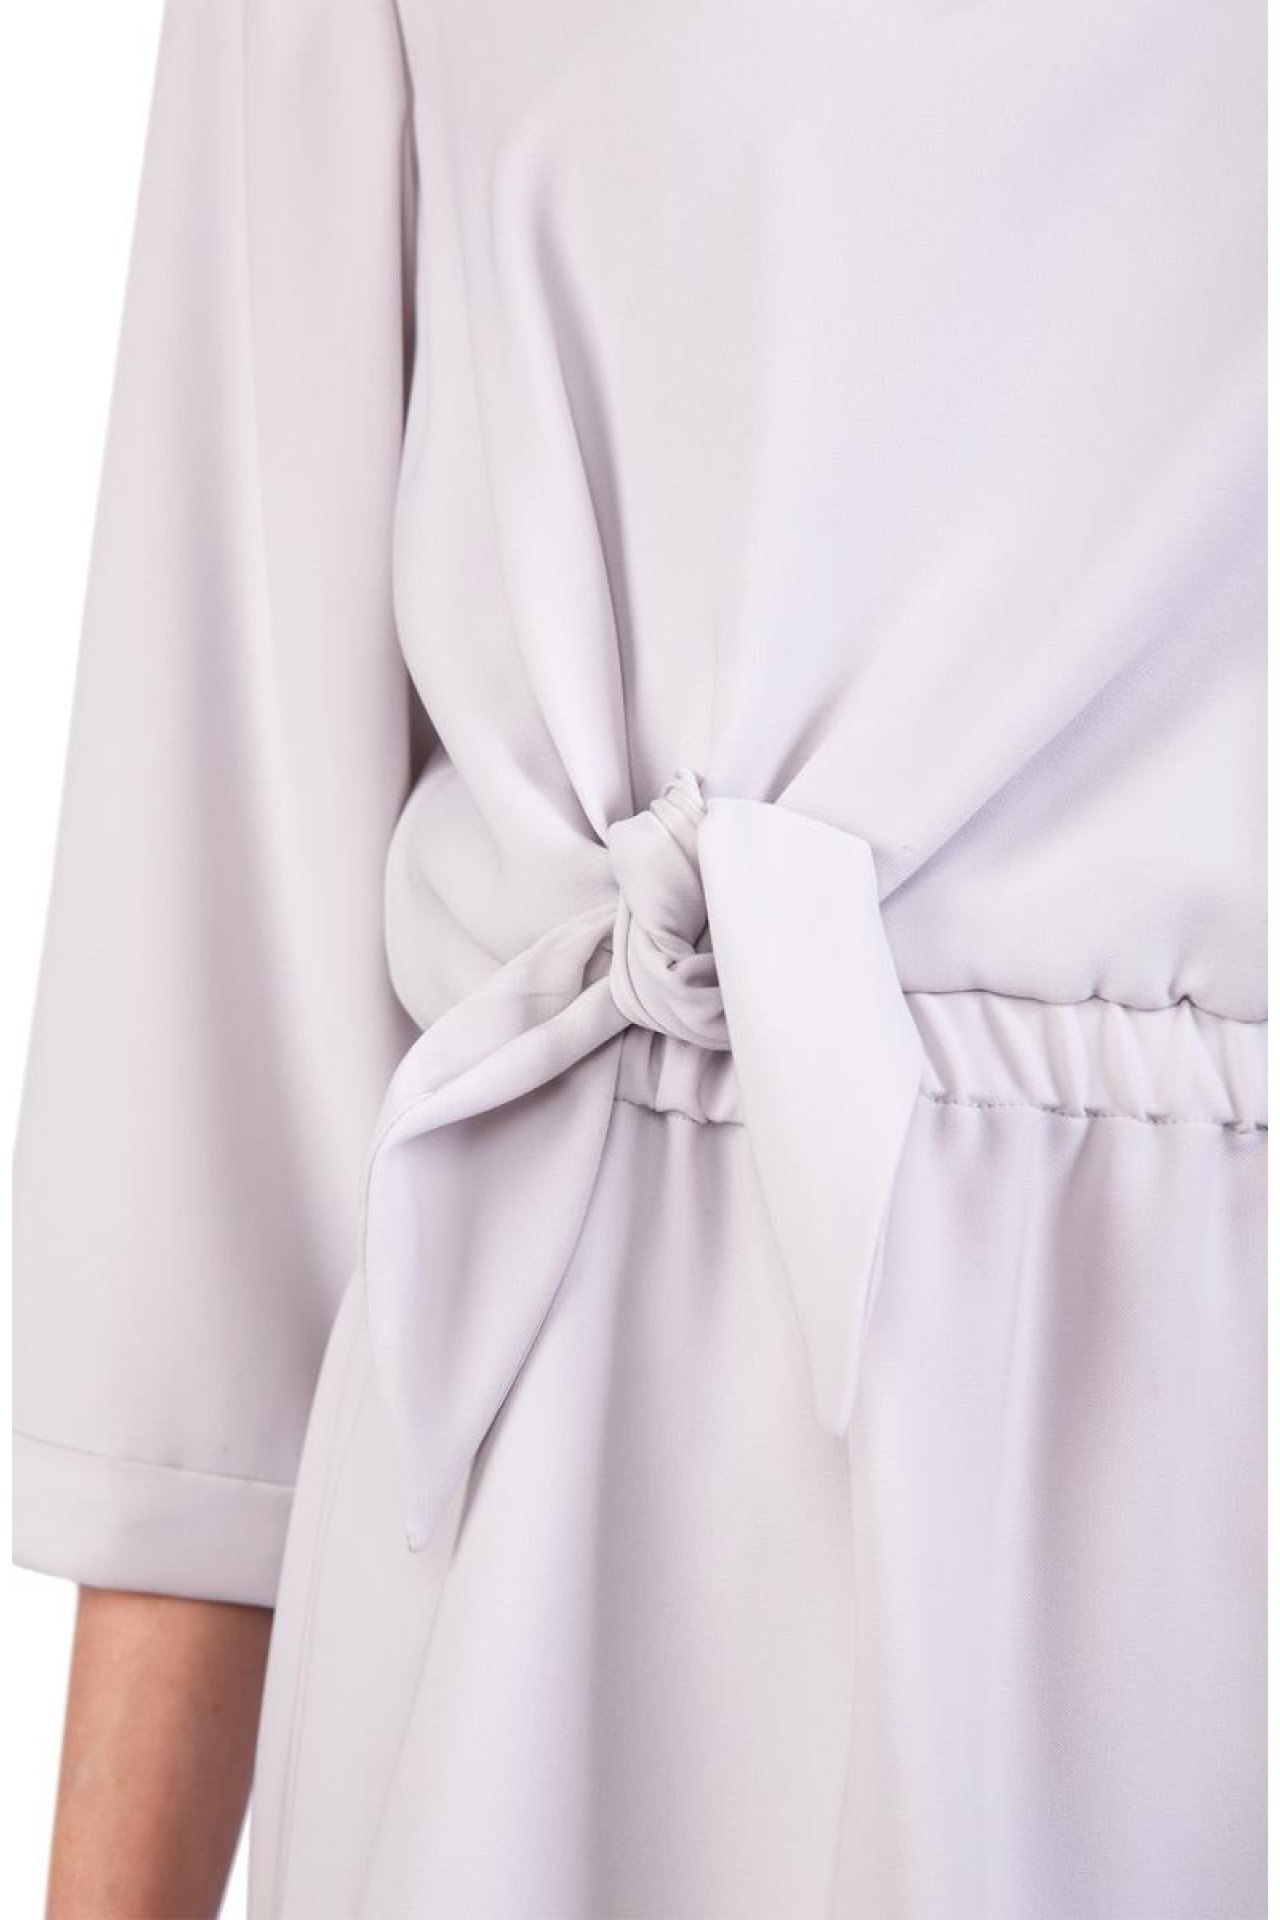 Платье женское WNA18T-WM015-0318 `Emporio Armani` белый